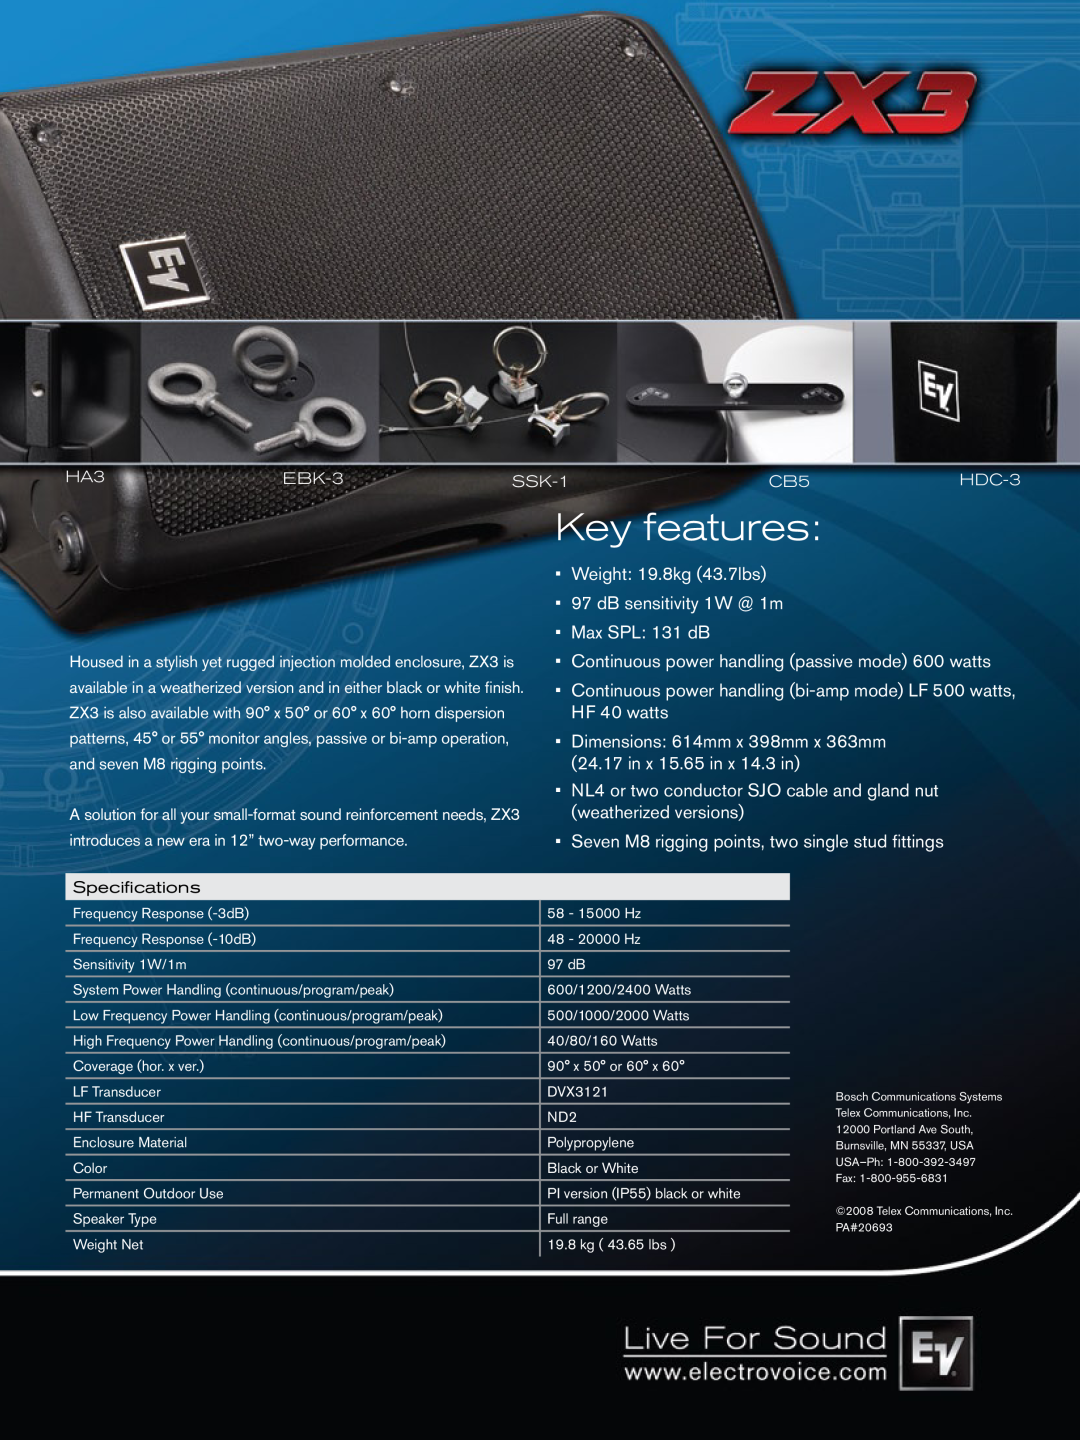 Telex ZX3 manual Key features, Weight 19.8kg 43.7lbs, dB sensitivity 1W @ 1m Max SPL 131 dB, in x 15.65 in x 14.3 in 